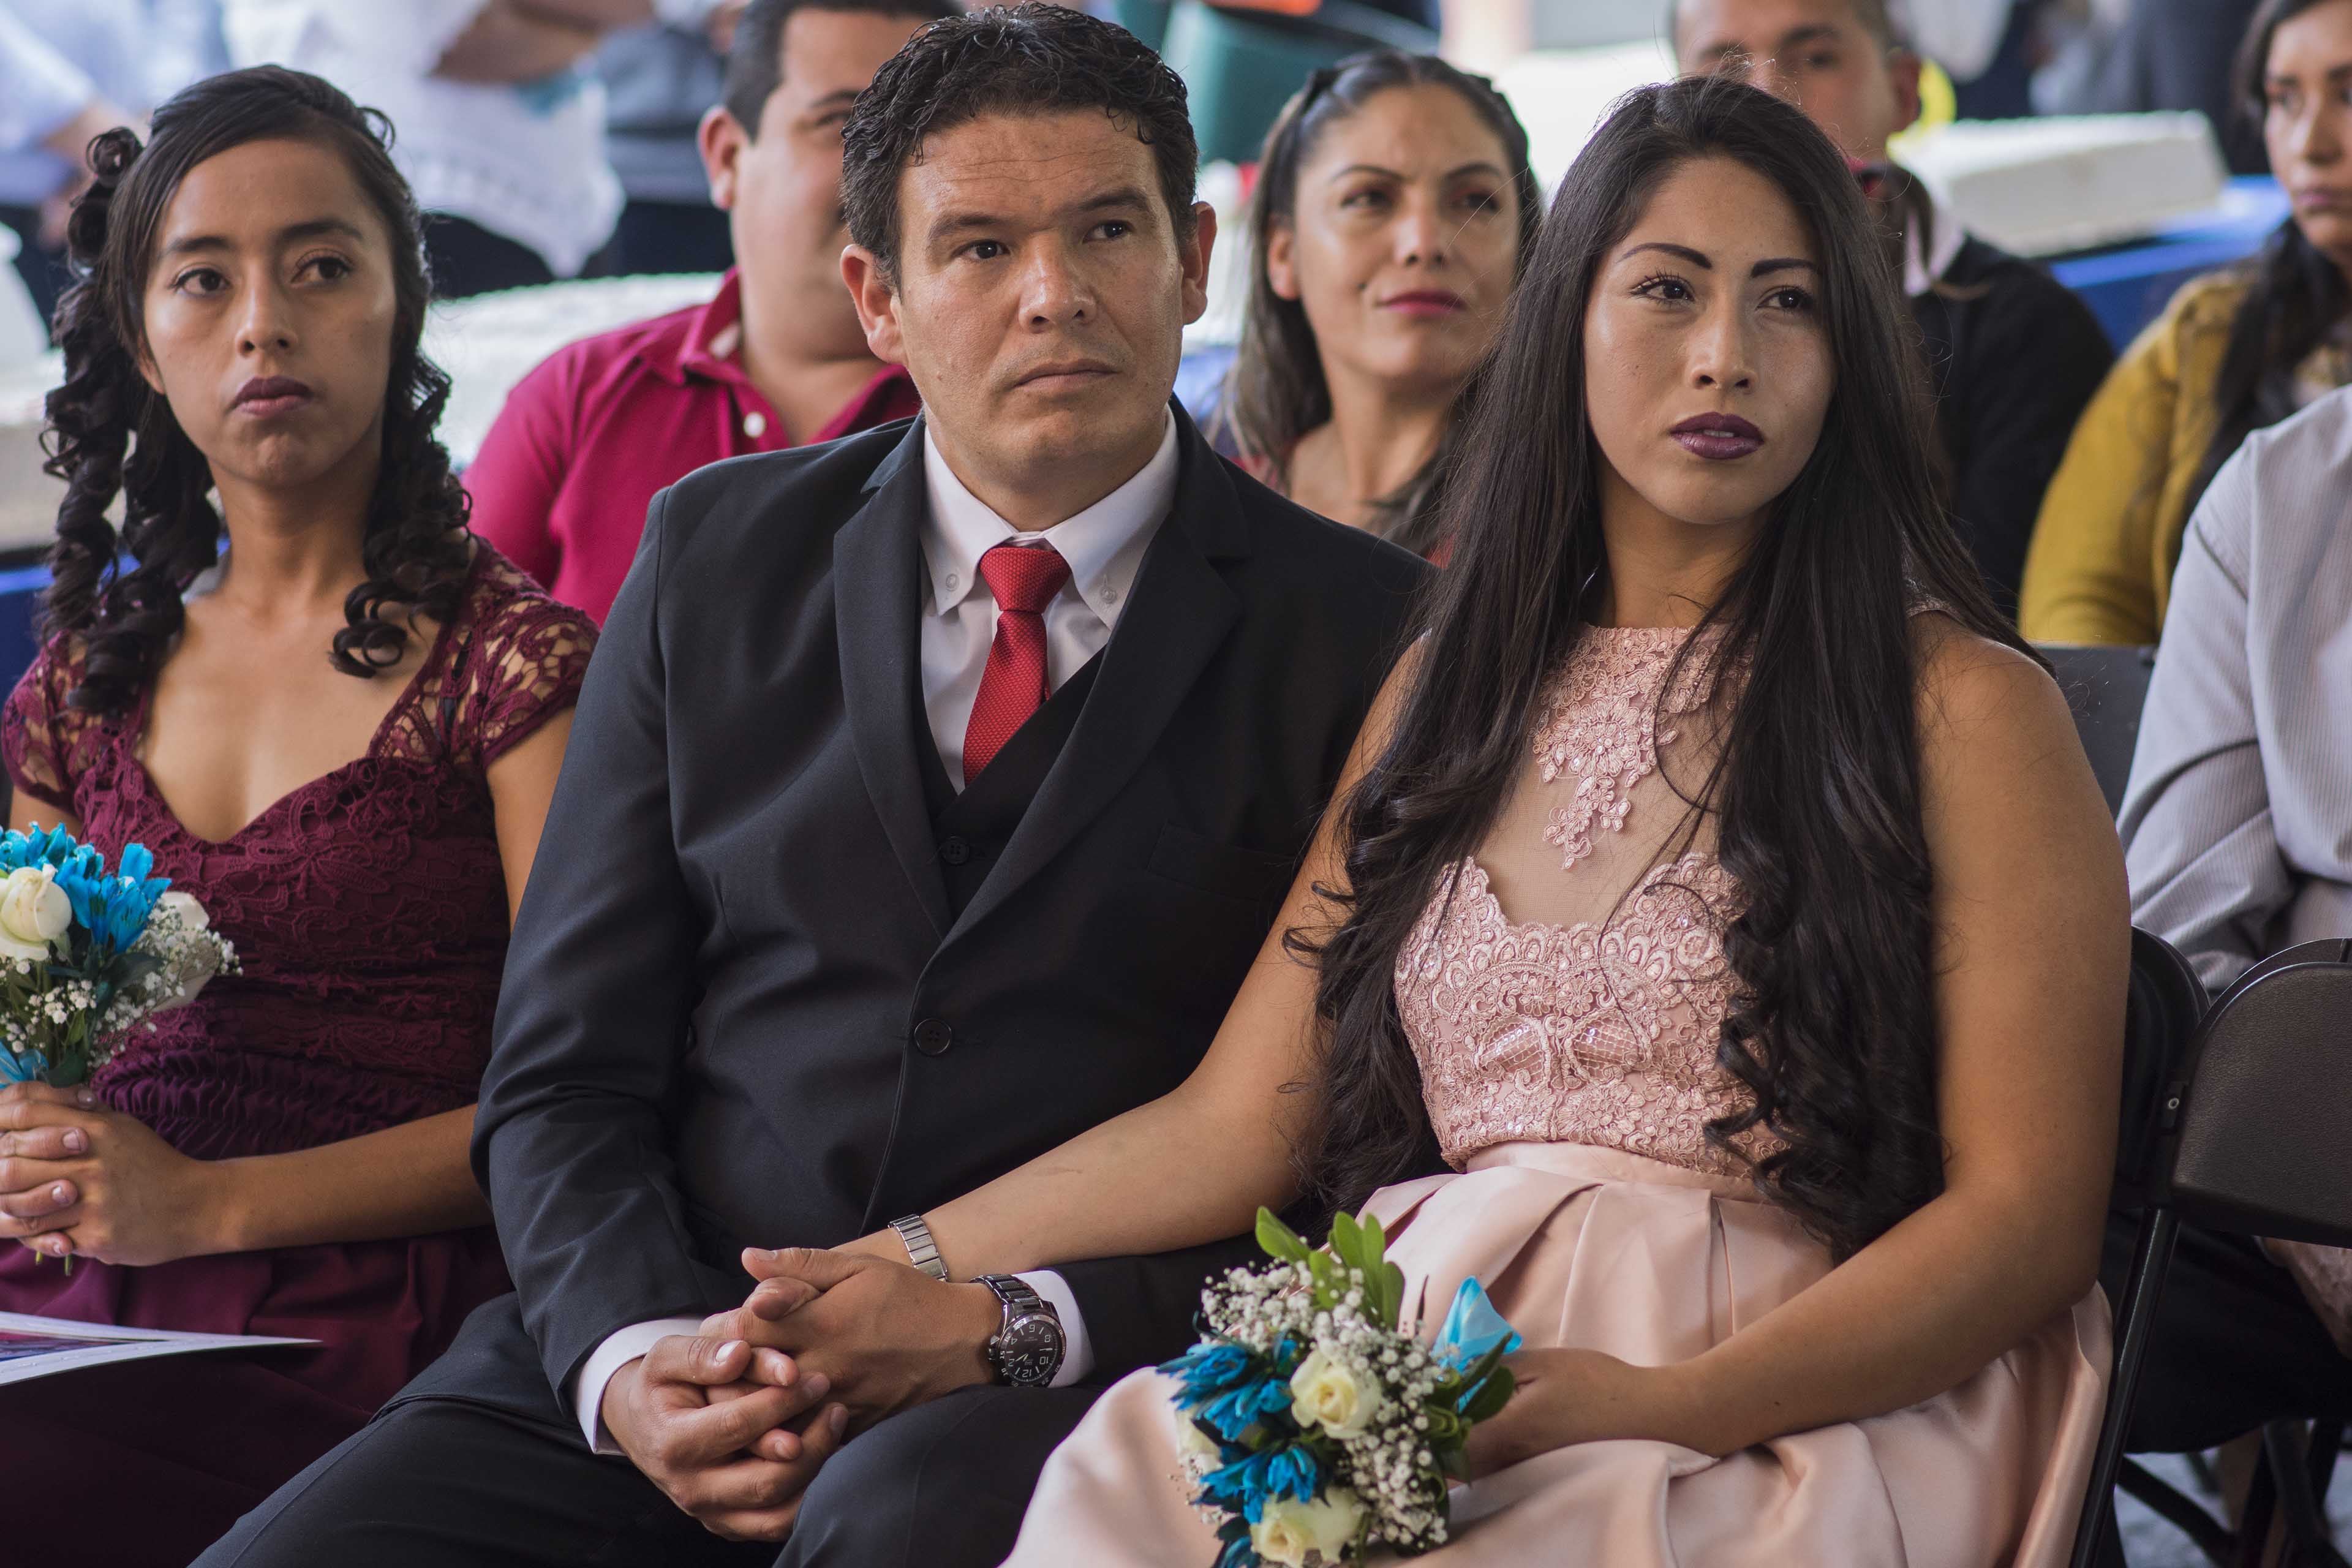  En los últimos 20 años, divorcios han aumentado exponencialmente, advierte la UNAM